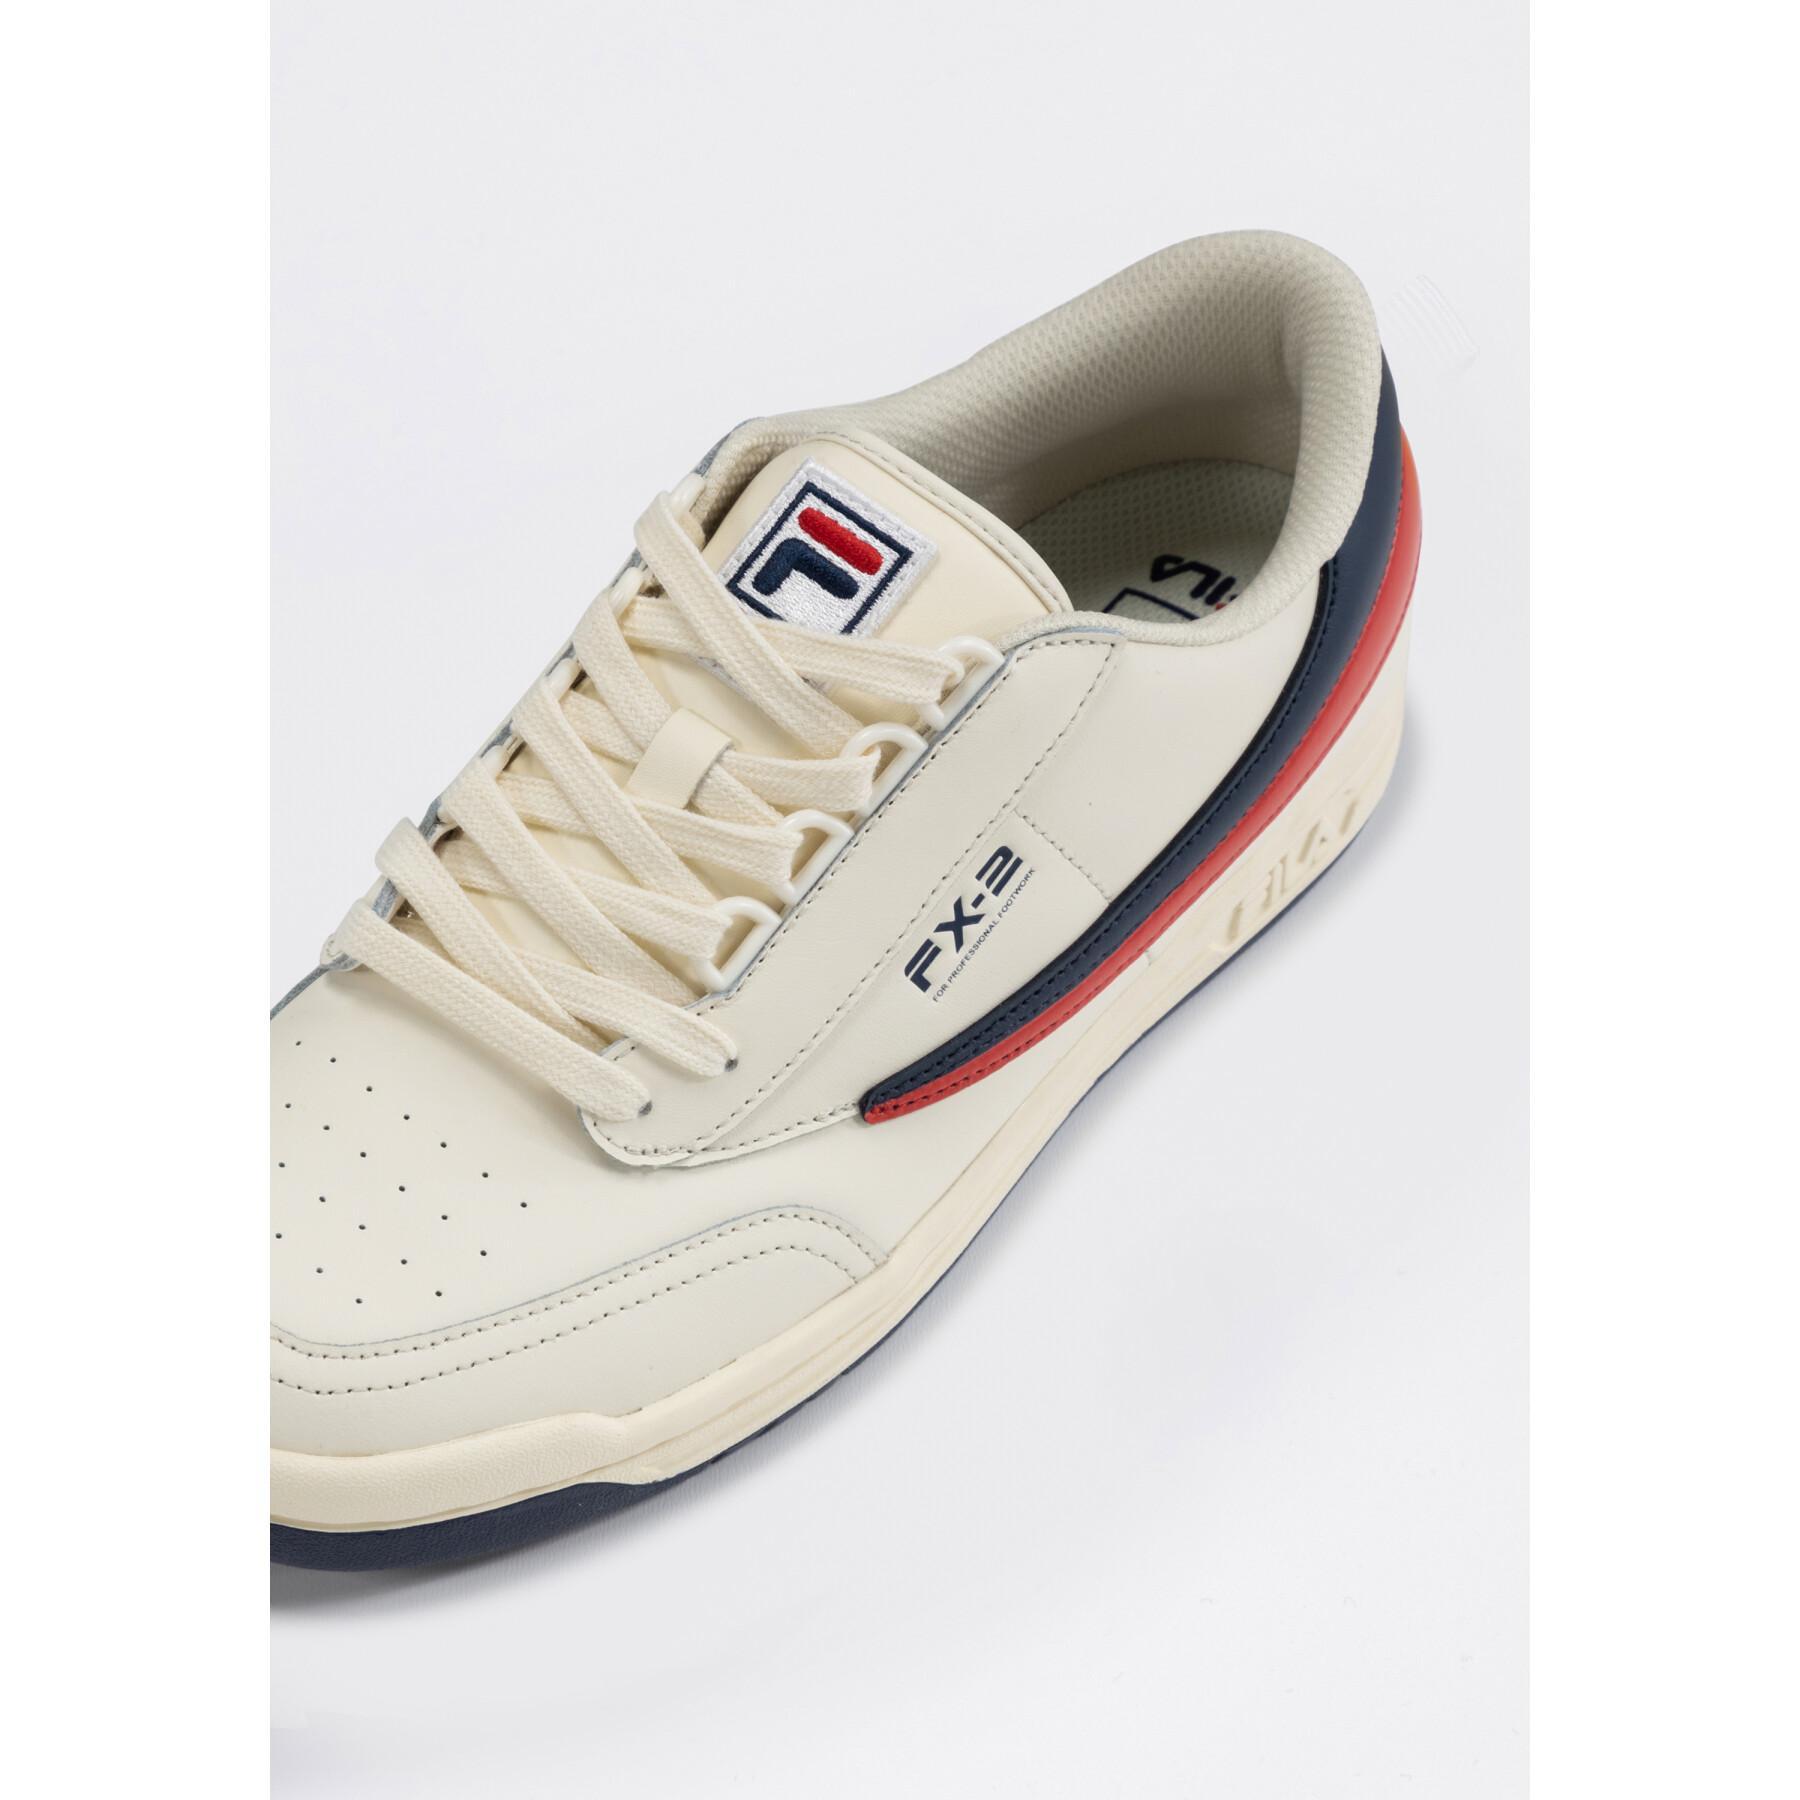 Sneakers Fila Original Tennis '83